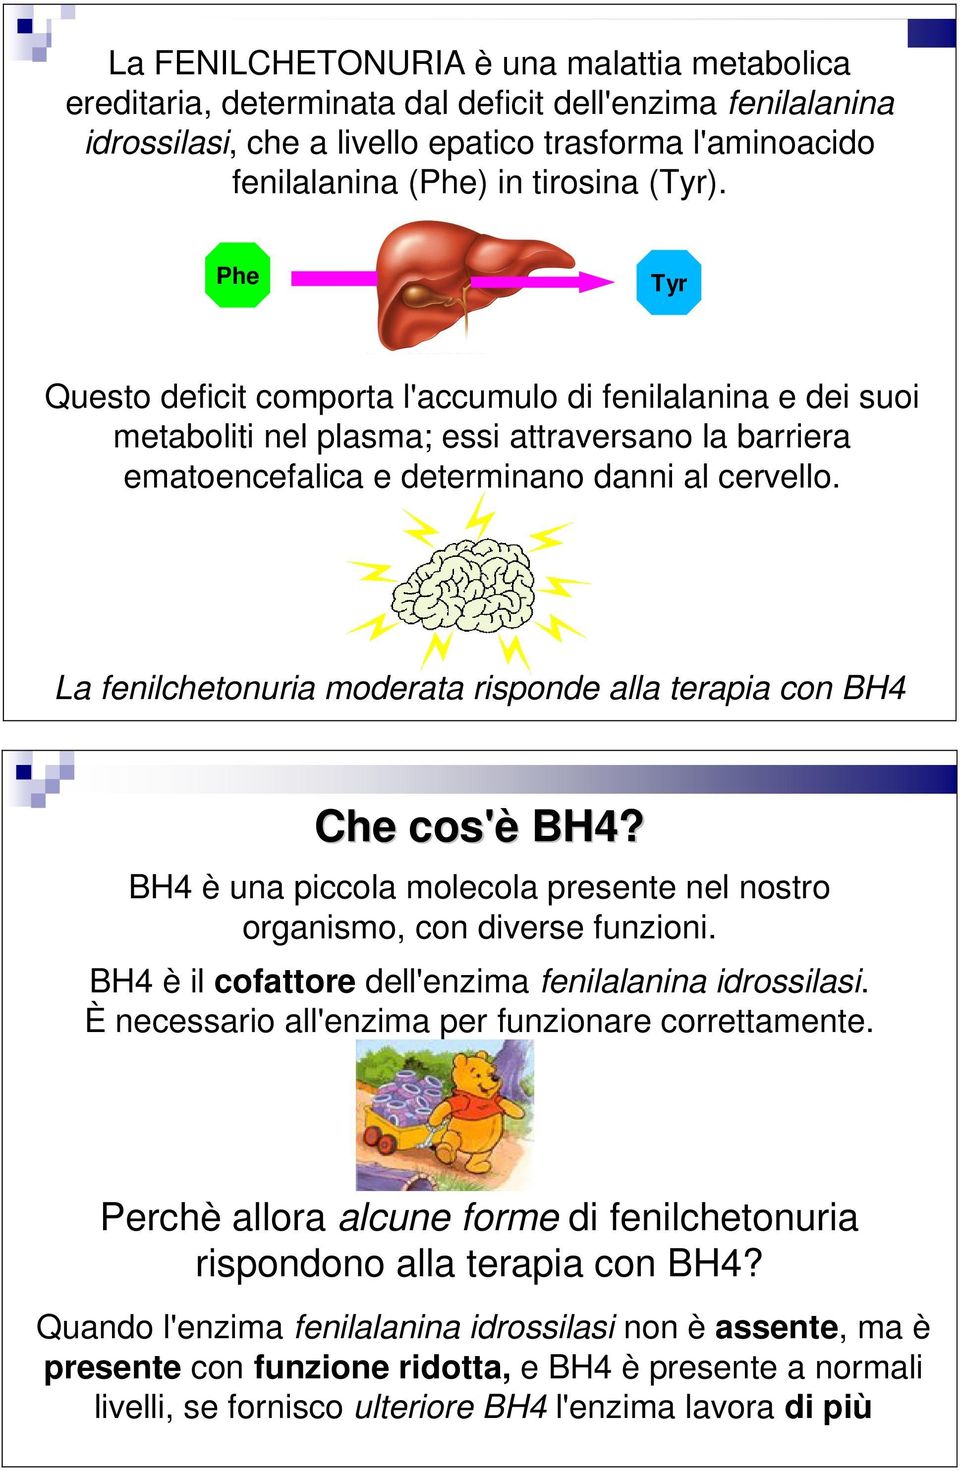 La fenilchetonuria moderata risponde alla terapia con BH4 Che cos'è BH4? BH4 è una piccola molecola presente nel nostro organismo, con diverse funzioni.